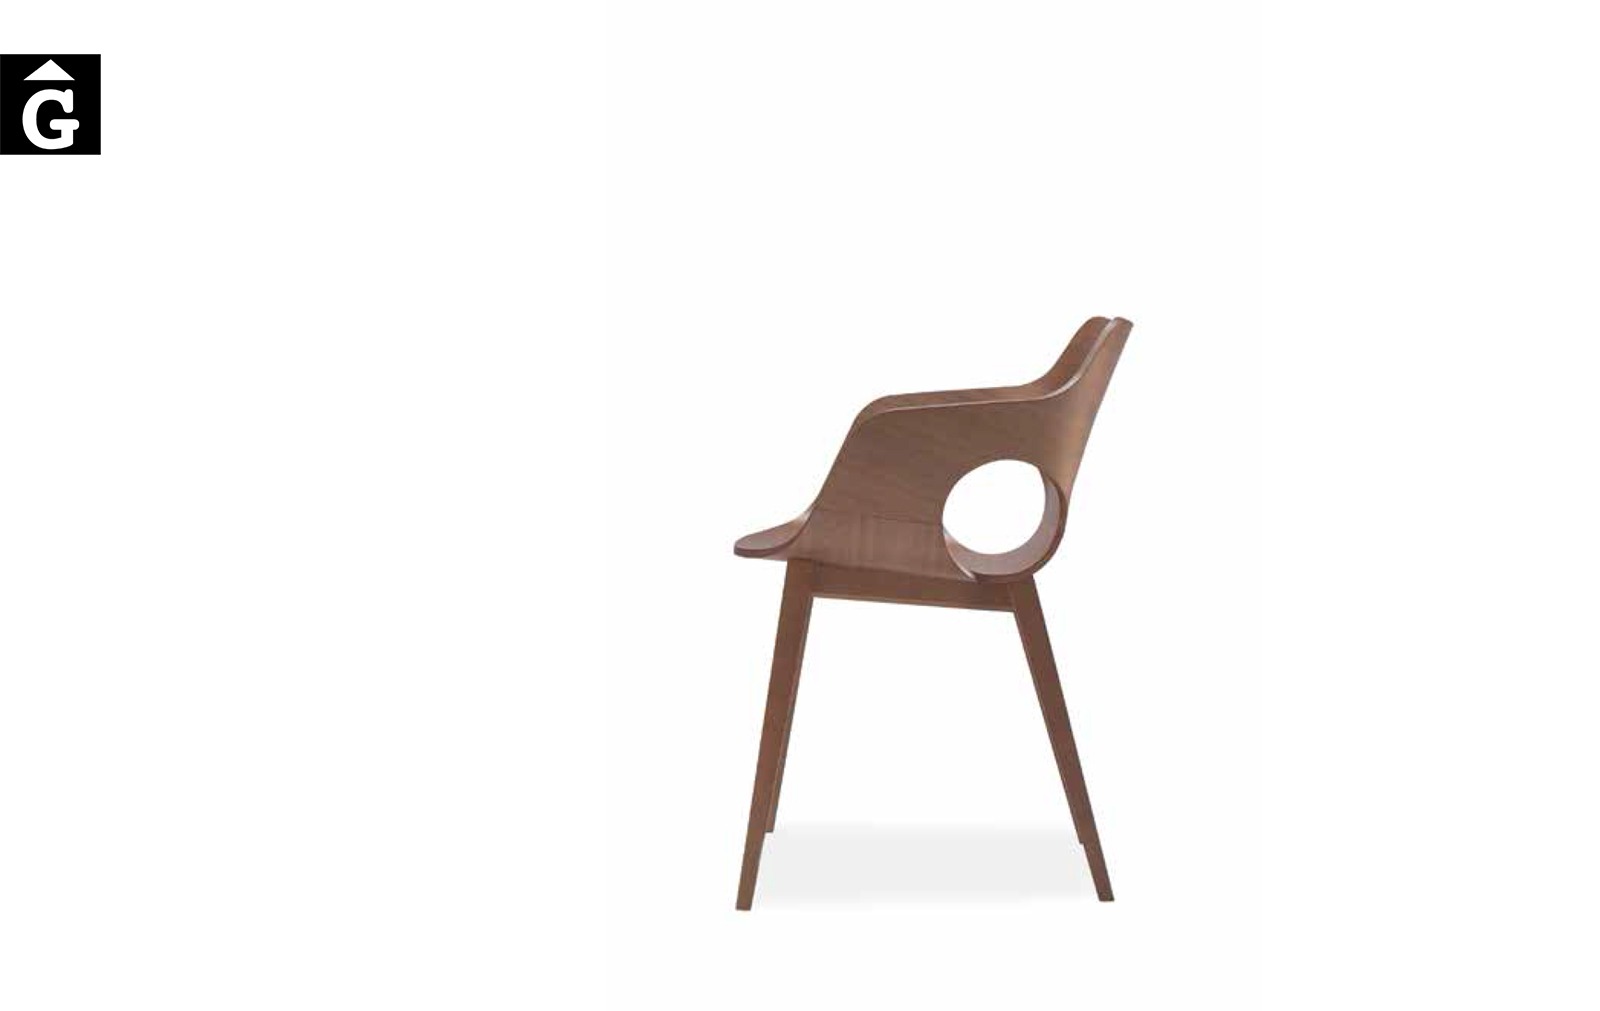 Butaca Olé tota fusta Loyra muebles by mobles Gifreu Idees per la llar moble de qualitat